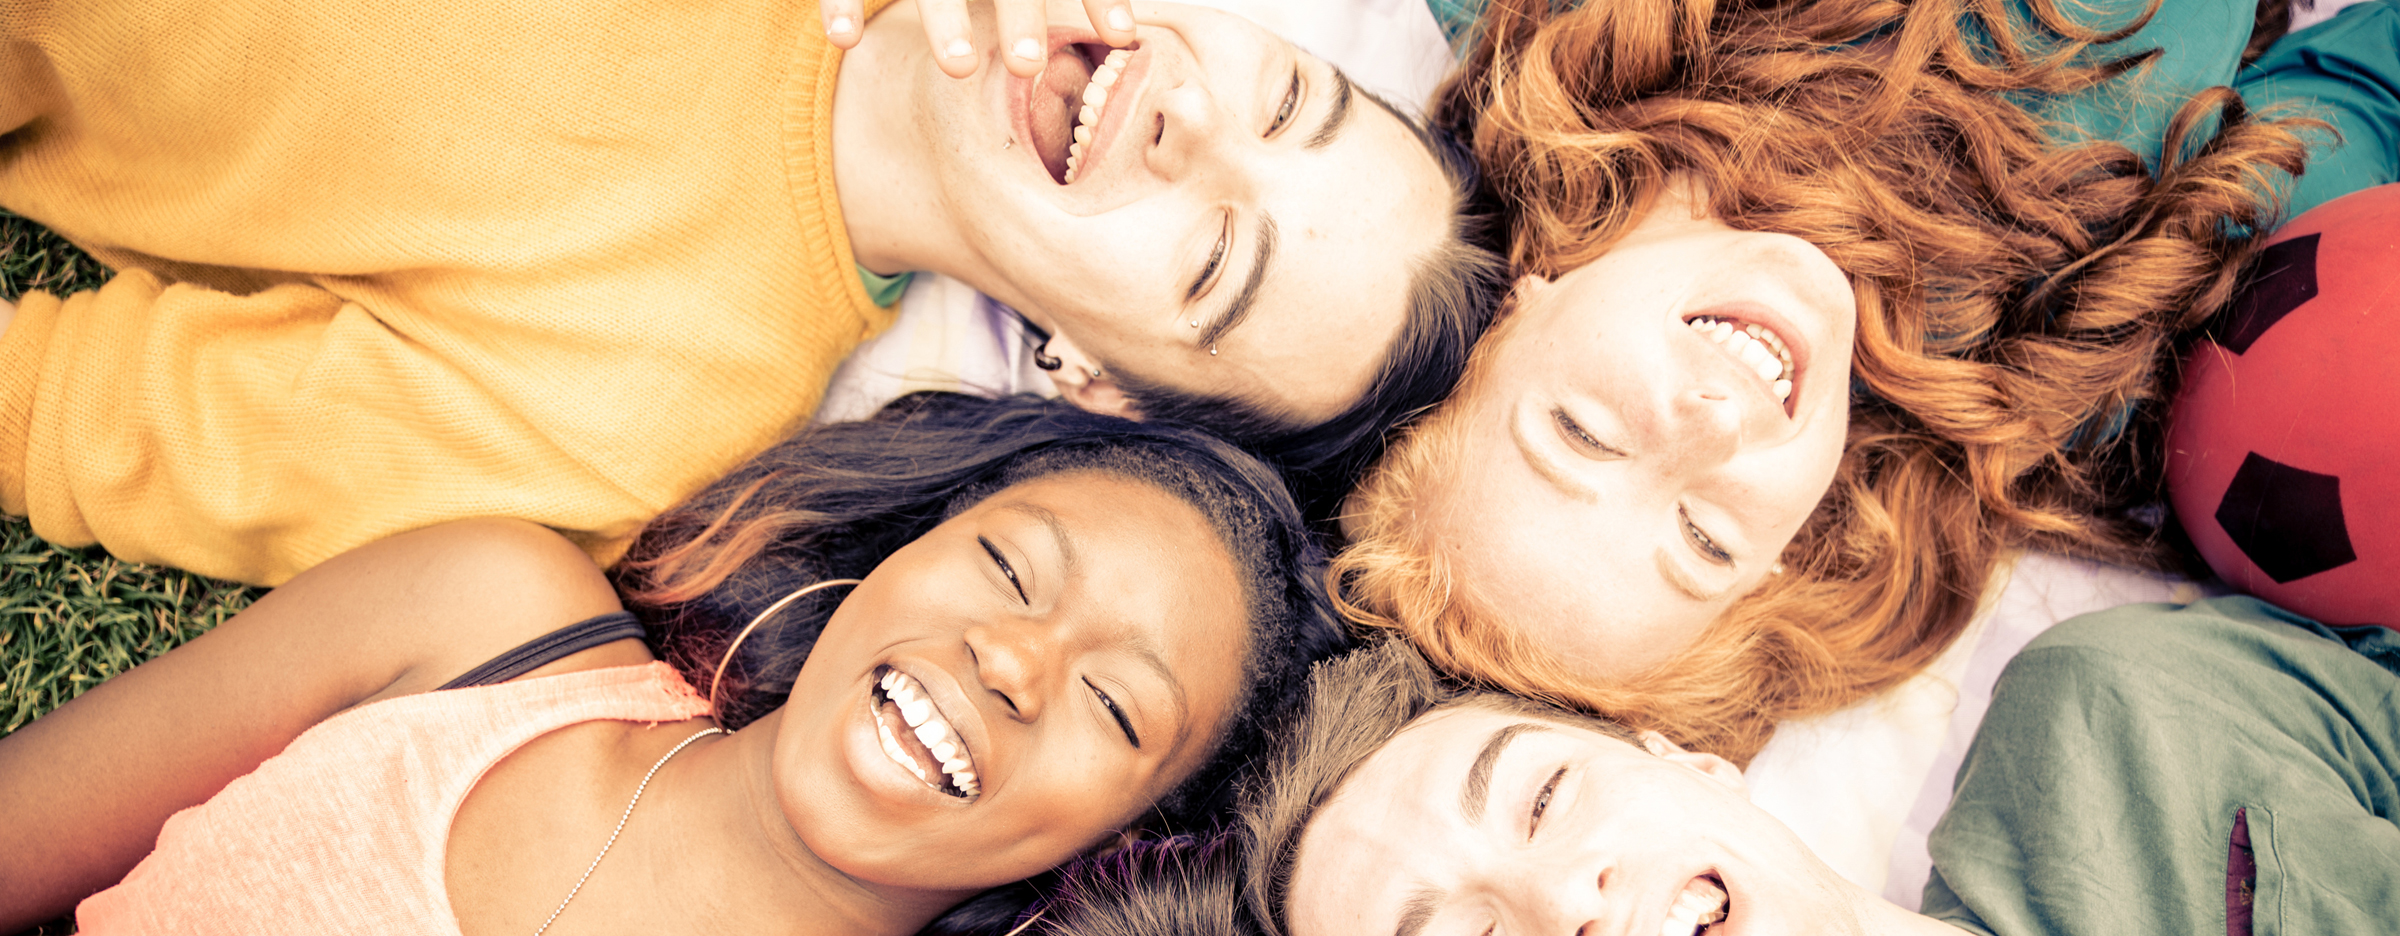 Fünf junge Menschen liegen mit ihren Köpfen im Kreis auf einer Wiese und lachen.